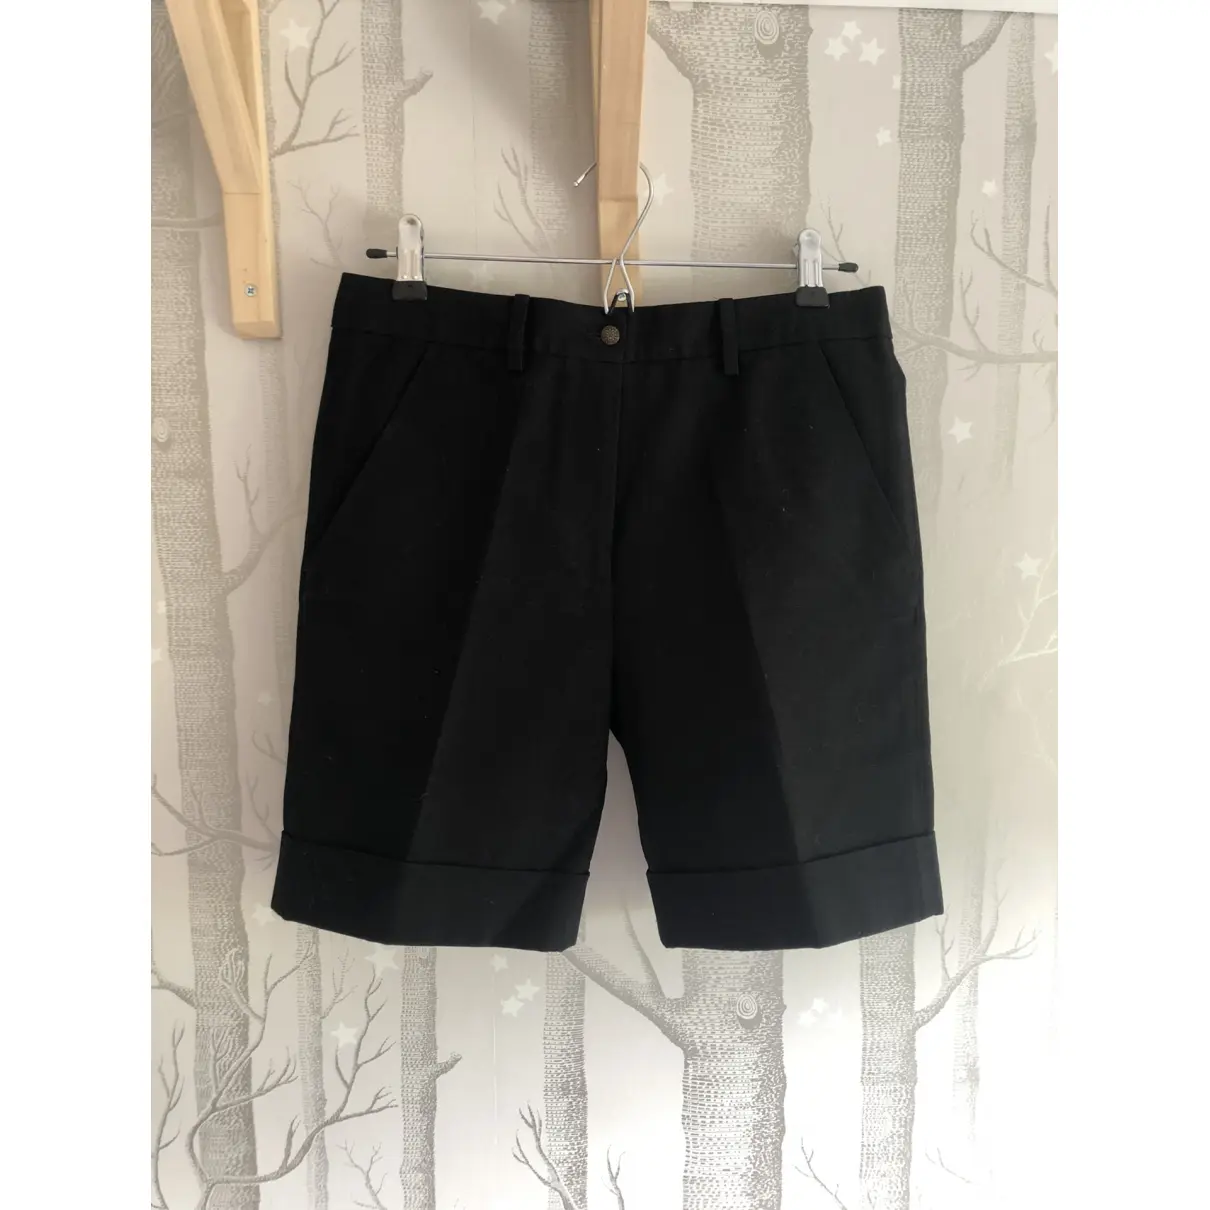 Buy Balenciaga Shorts online